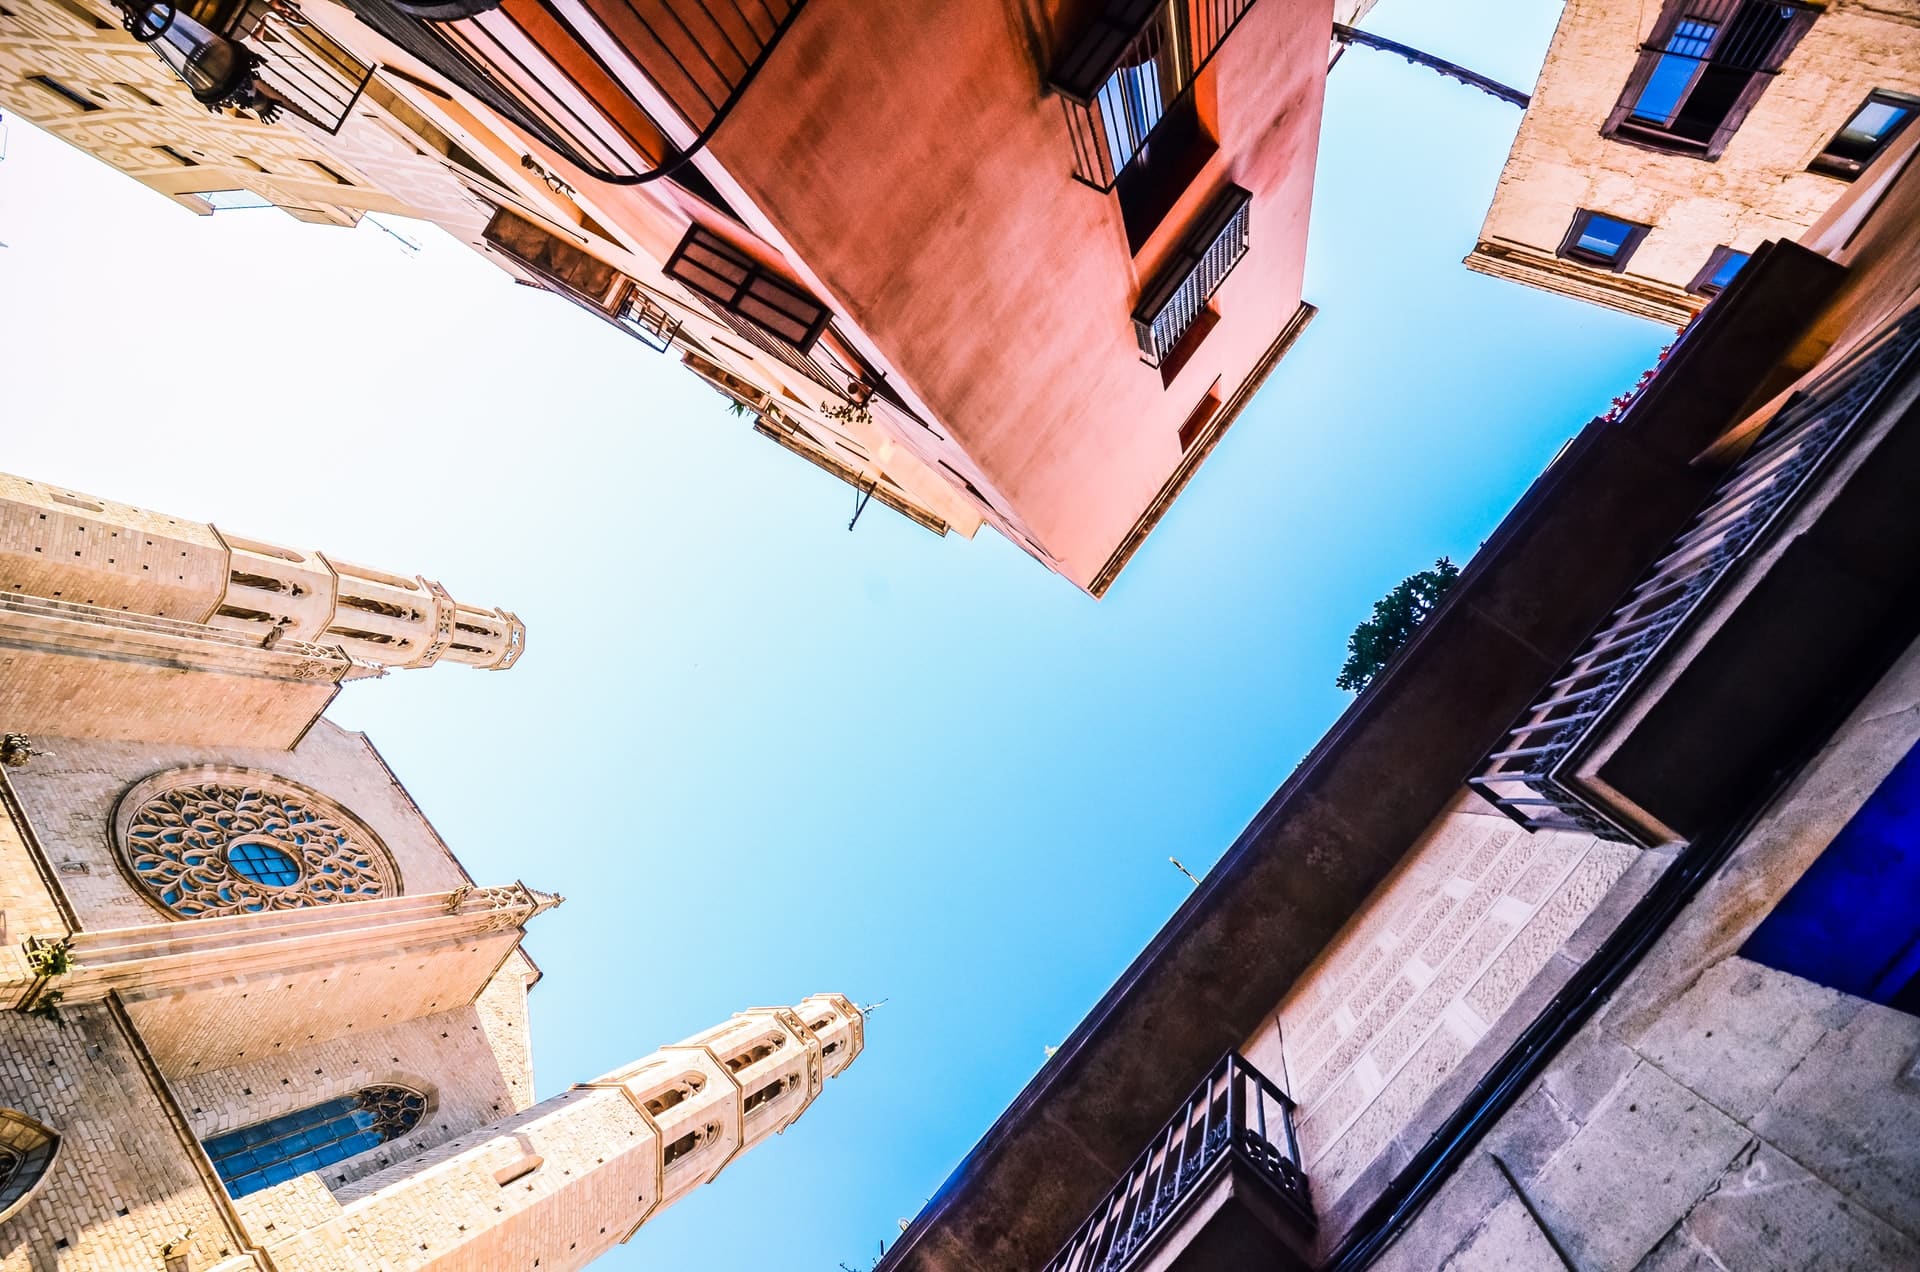 El Born acull l´església de Santa Maria del Mar, el Museu Picasso i el Palau de la Música Catalana. Aquest barri és, a més, una de les millors zones per allotjar-se a Barcelona.